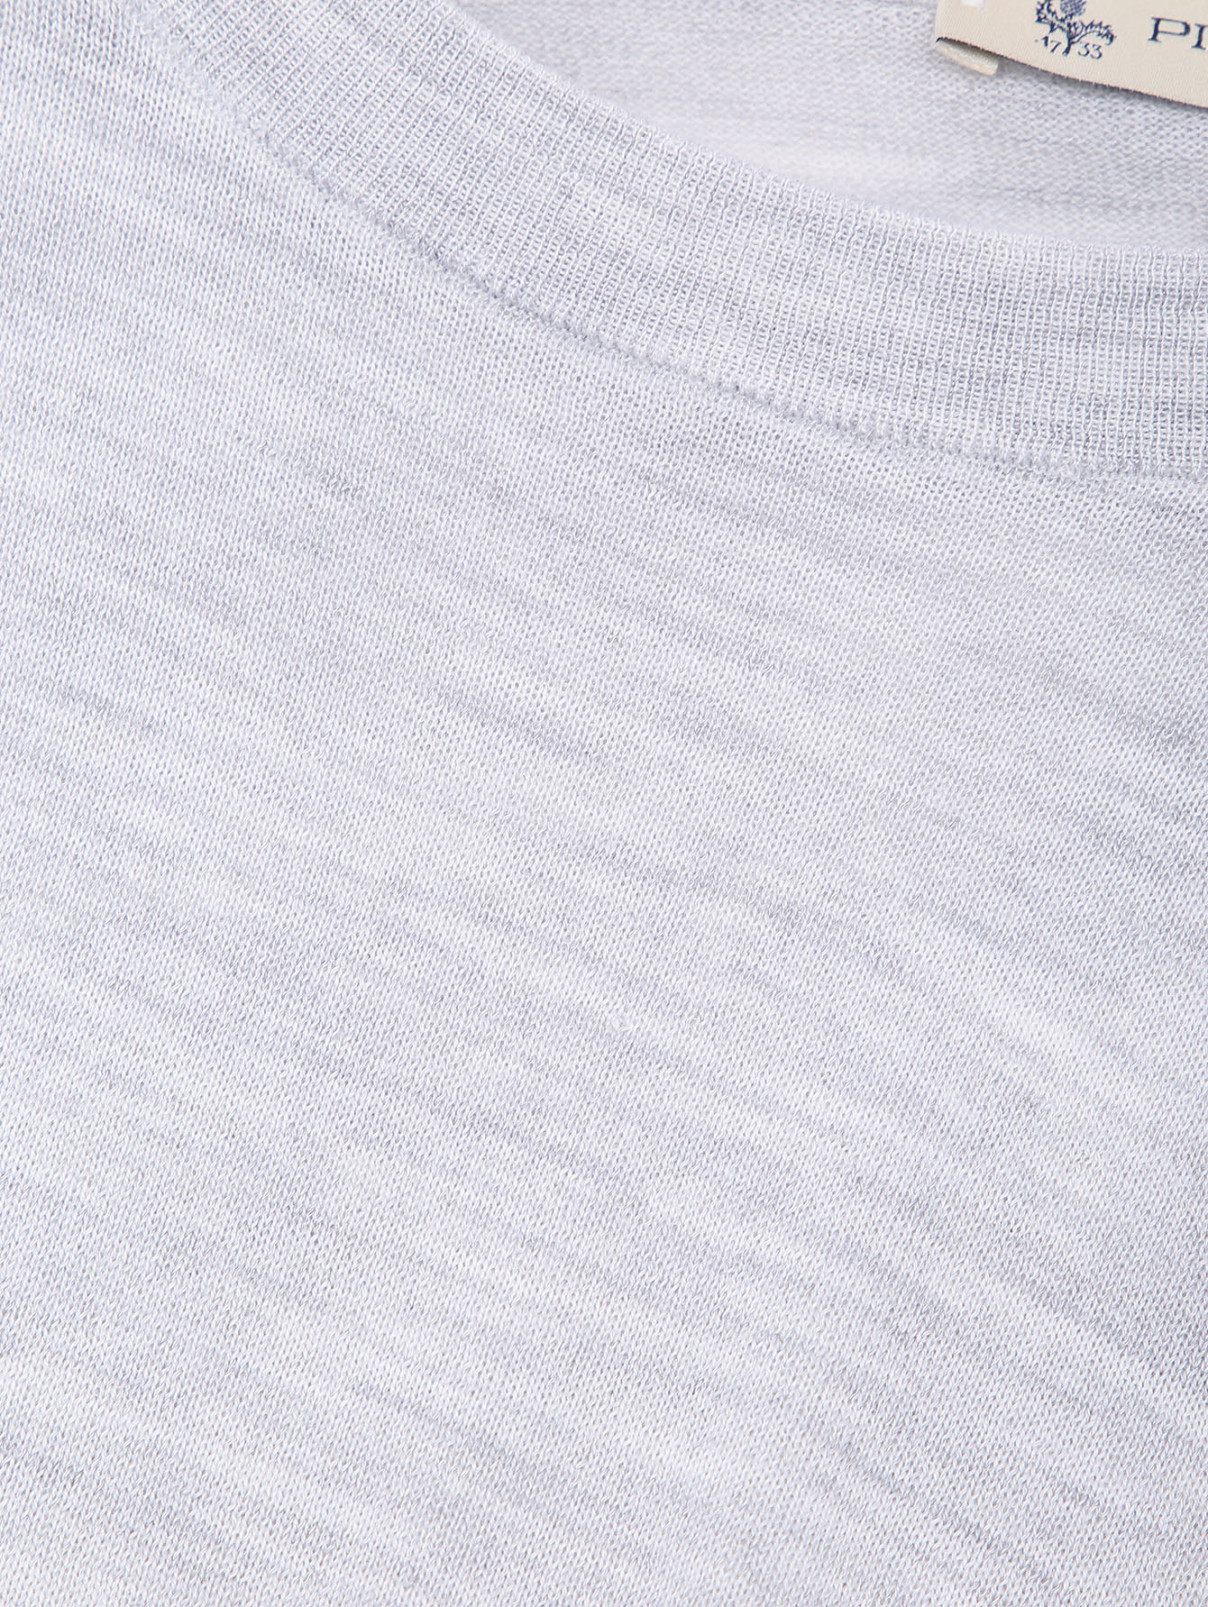 Джемпер из шерсти и шелка с круглым вырезом Piacenza Cashmere  –  Деталь  – Цвет:  Серый